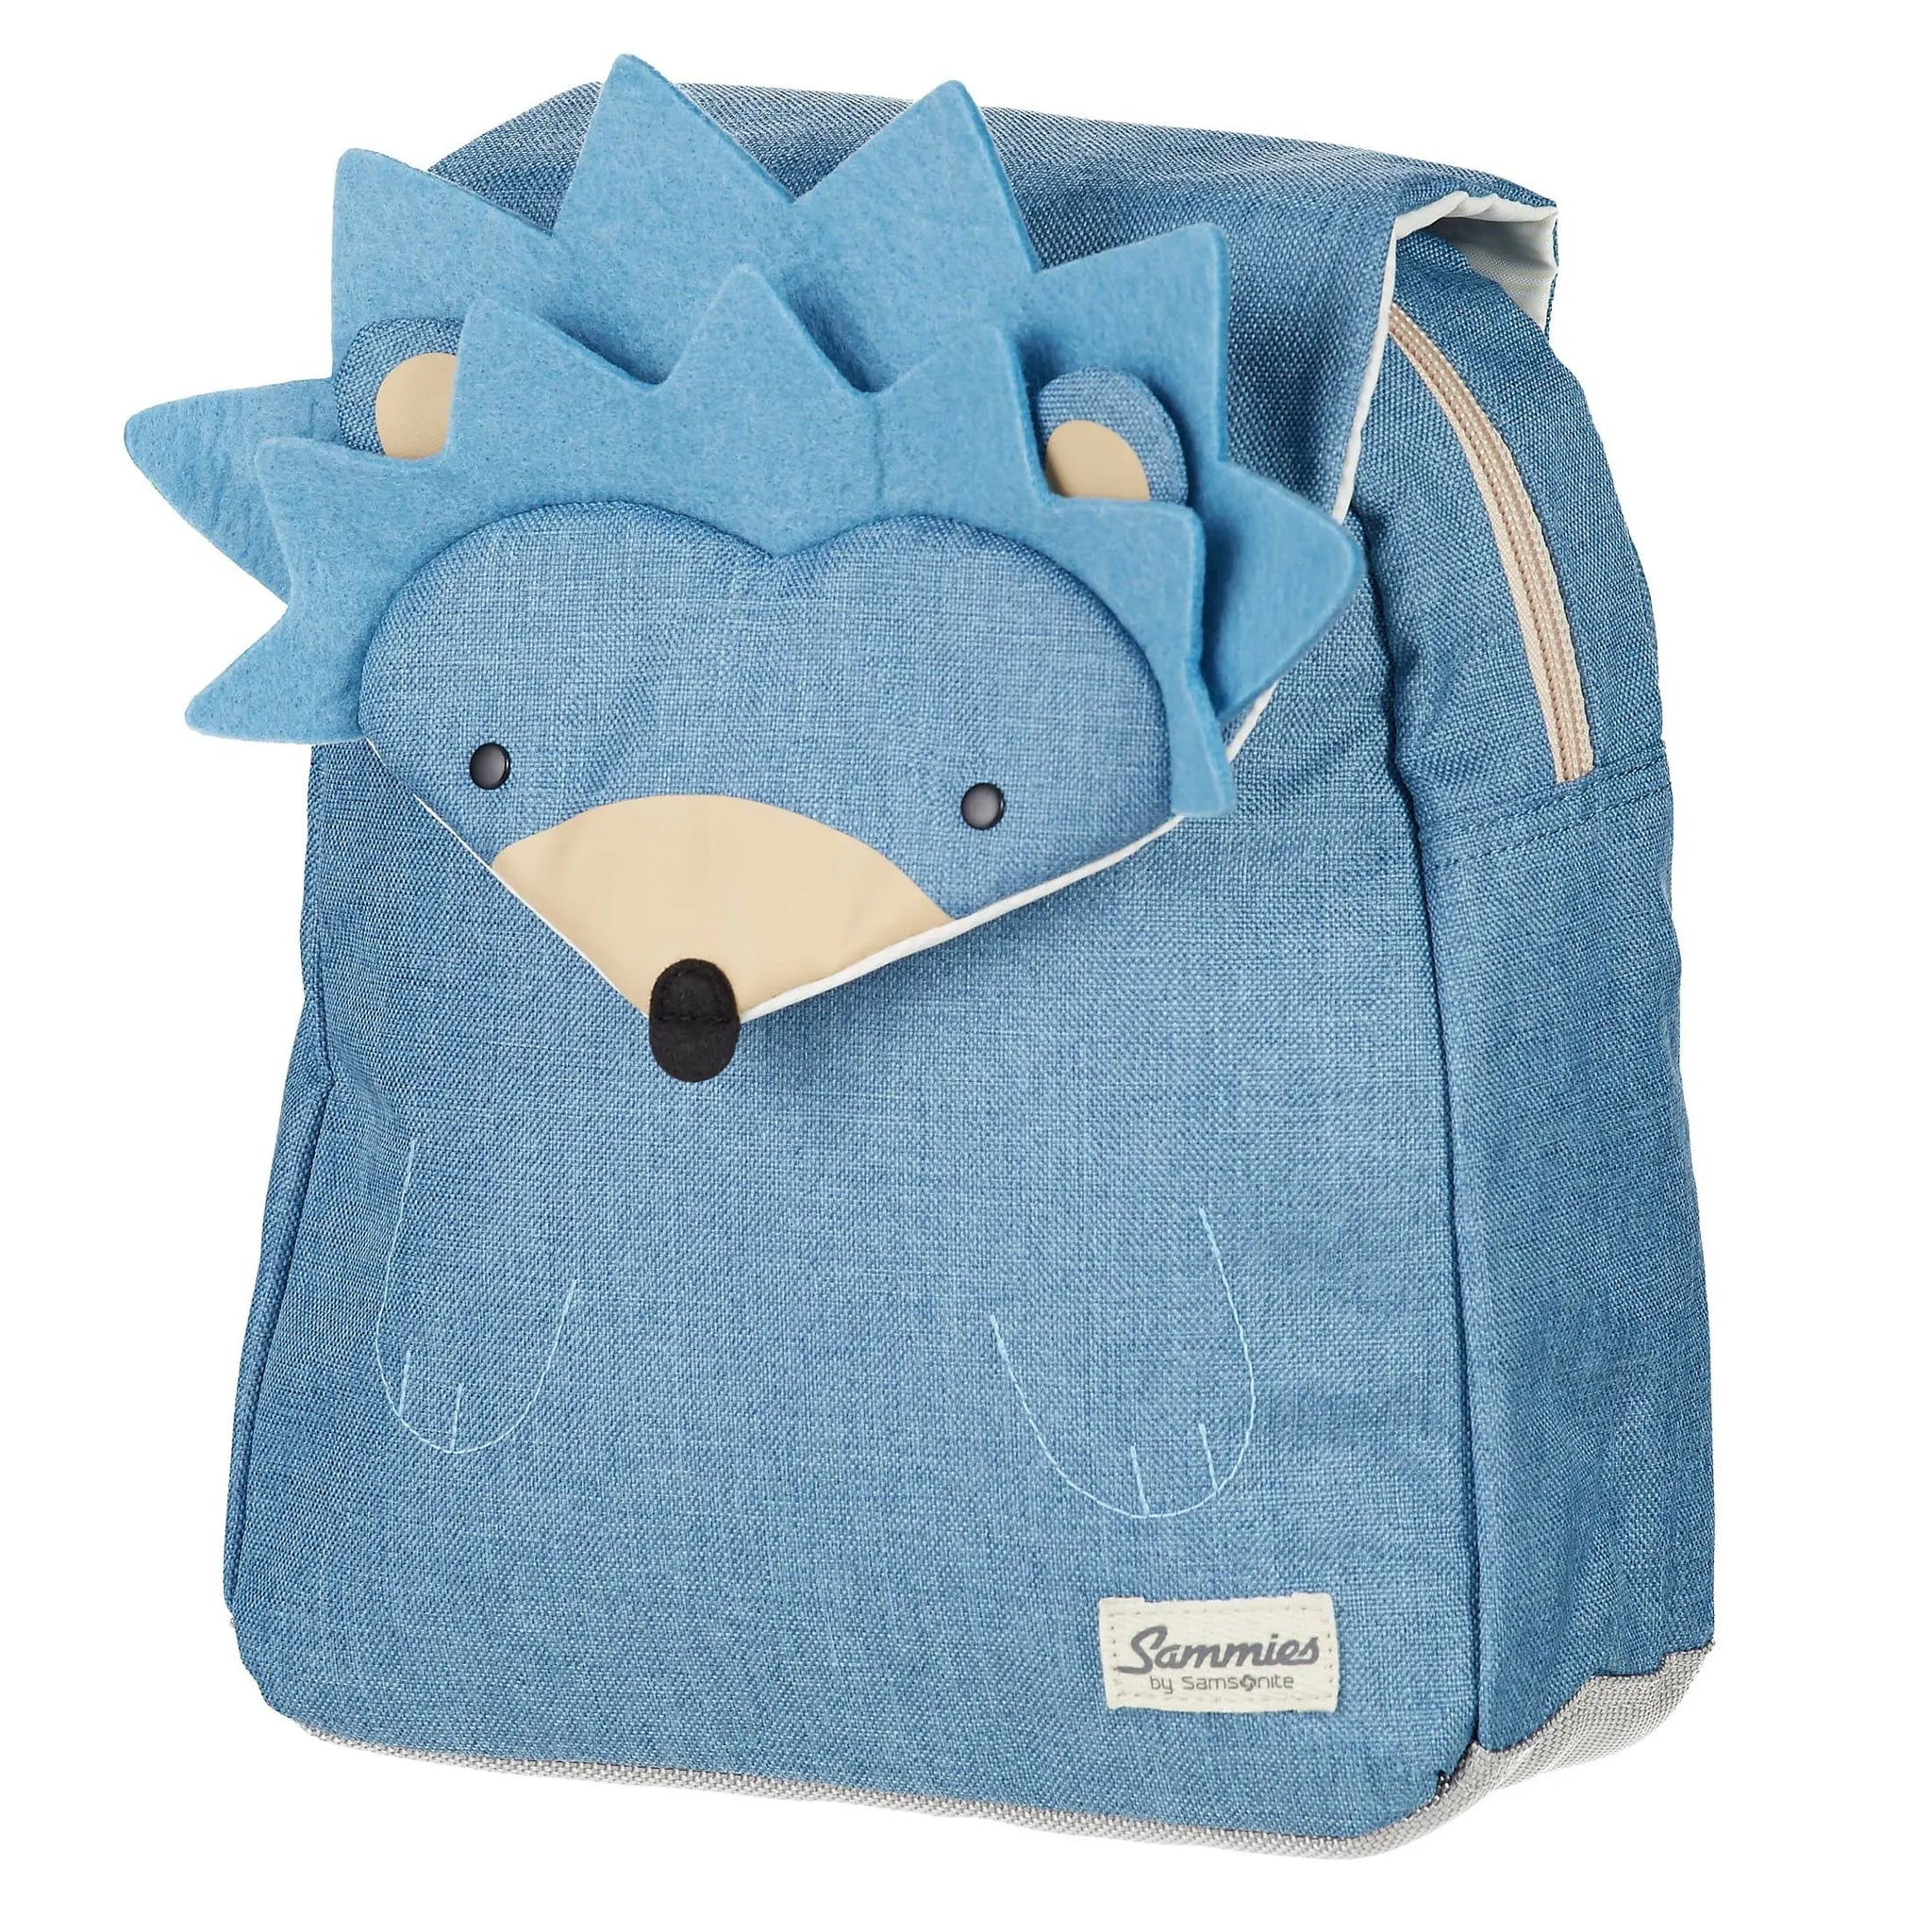 Happy hedgehog - 34 Samsonite harr Hedgehog cm Sammies backpack Harris